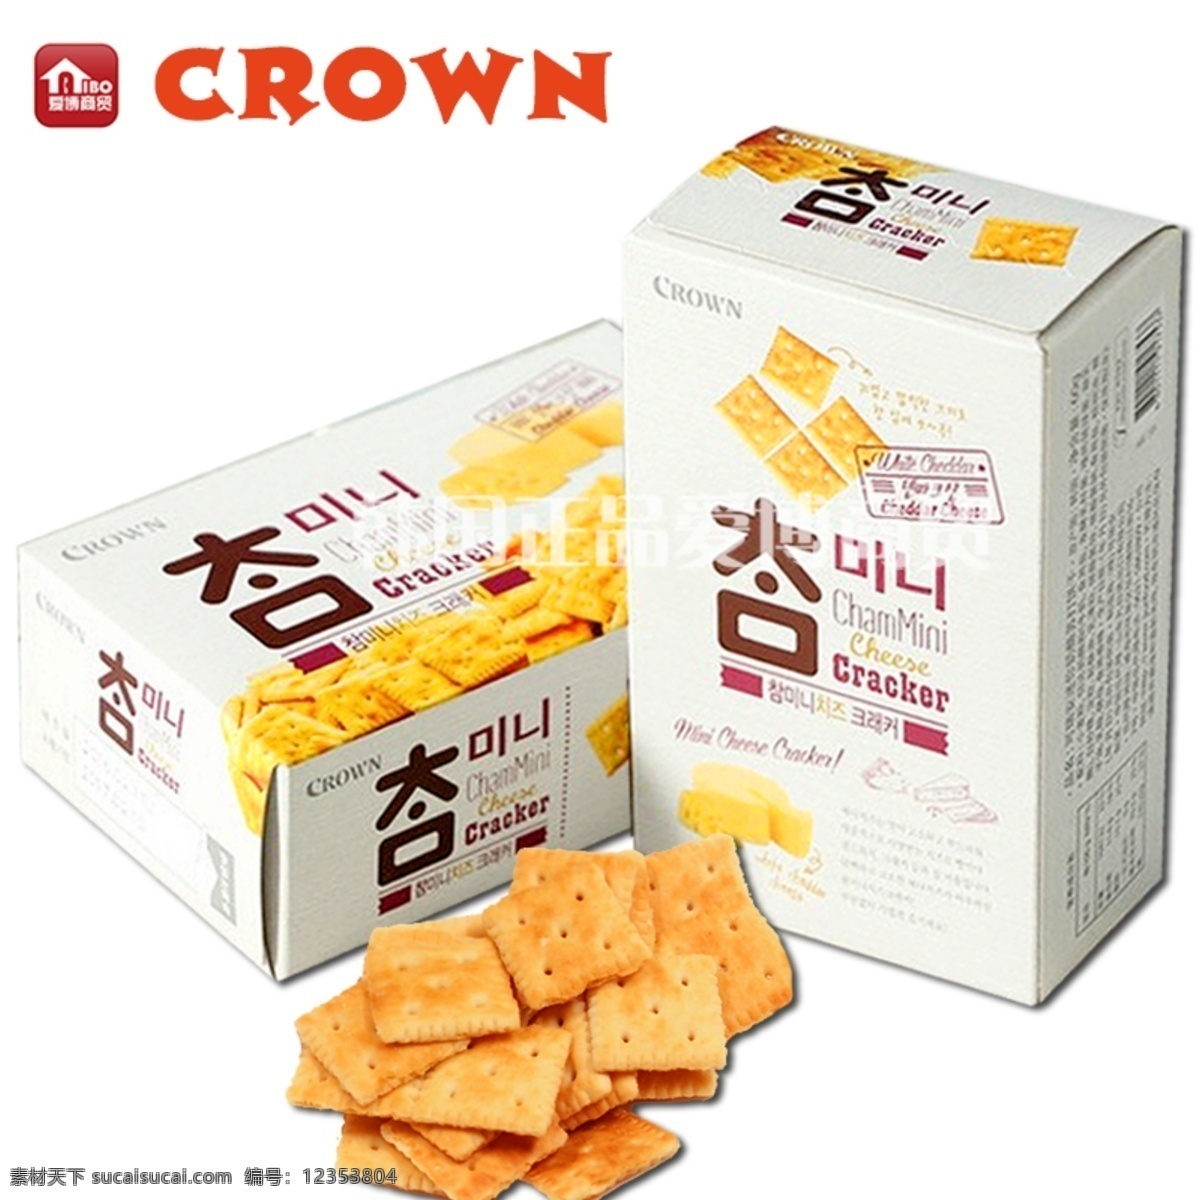 瑞安 迷你 奶酪 苏打 饼干 韩国 crown 可瑞安 脆饼 薄饼 食品 生活百科 餐饮美食